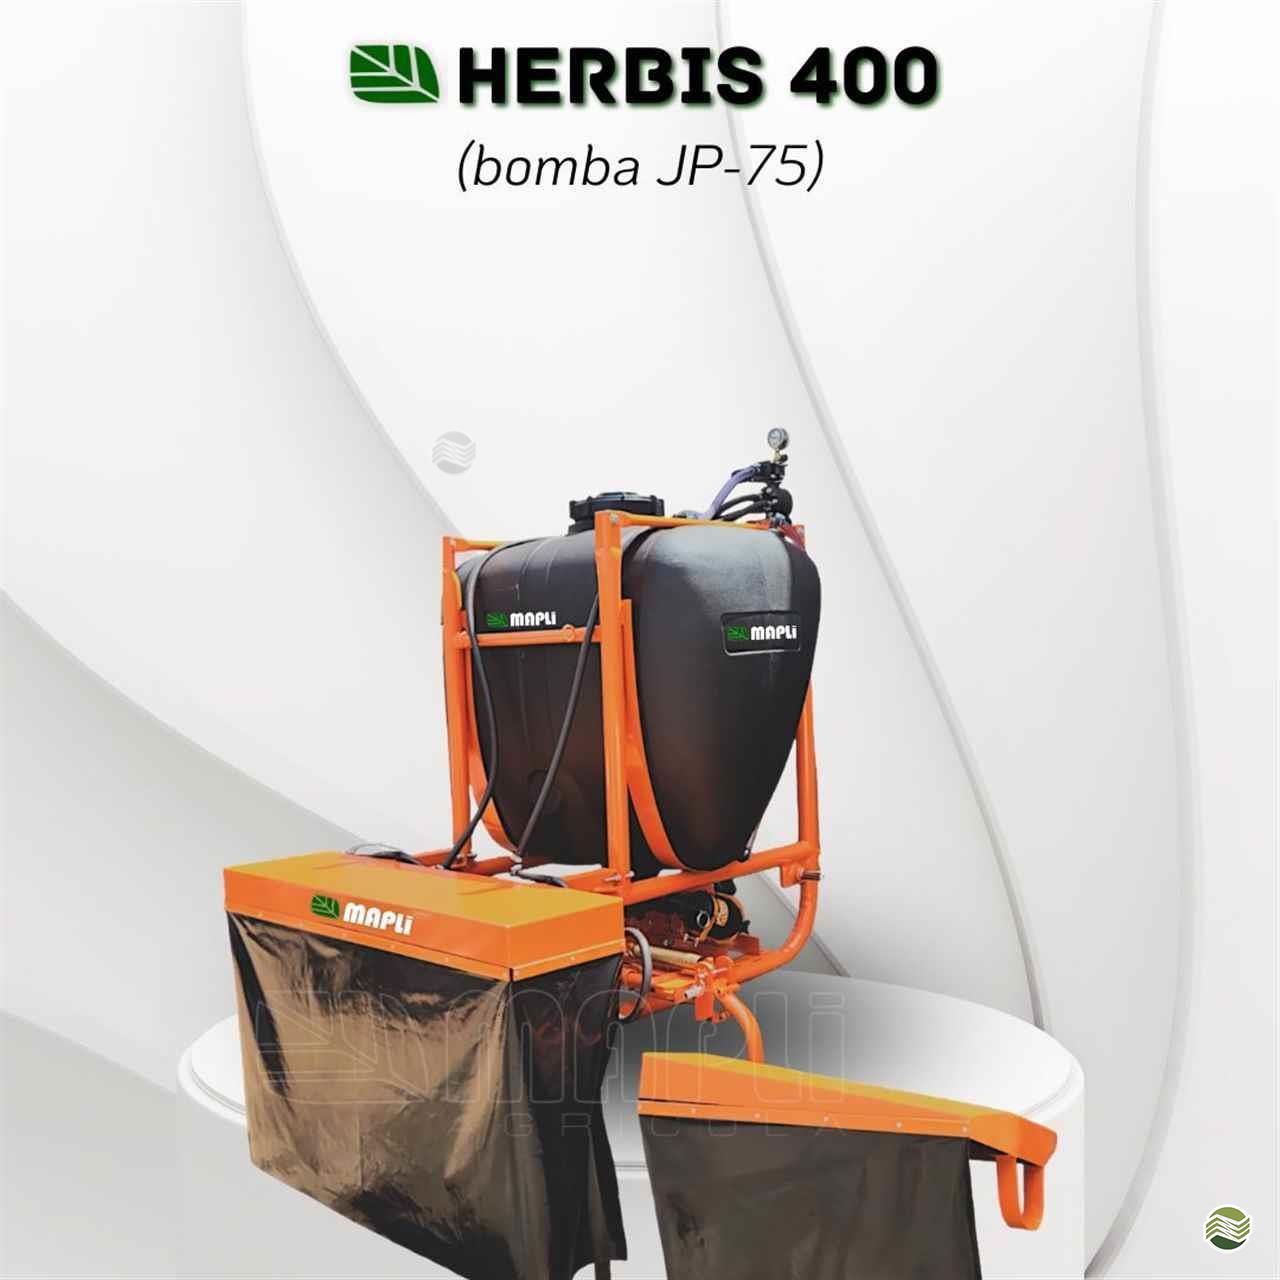 HERBIS 400